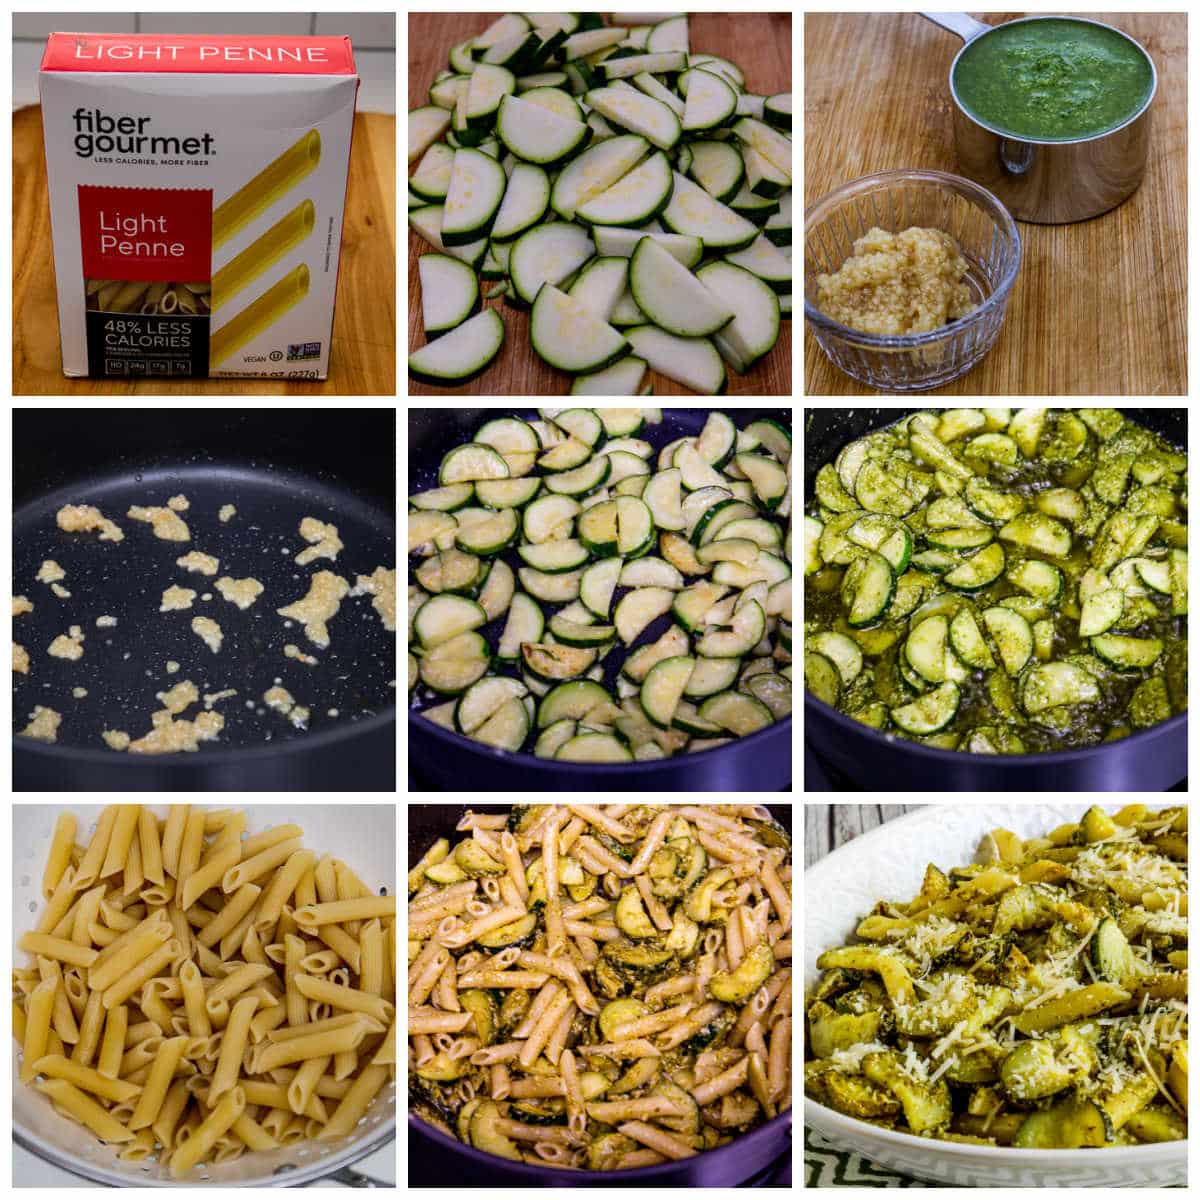 Zucchini Pesto Pasta Collage from the recipe steps